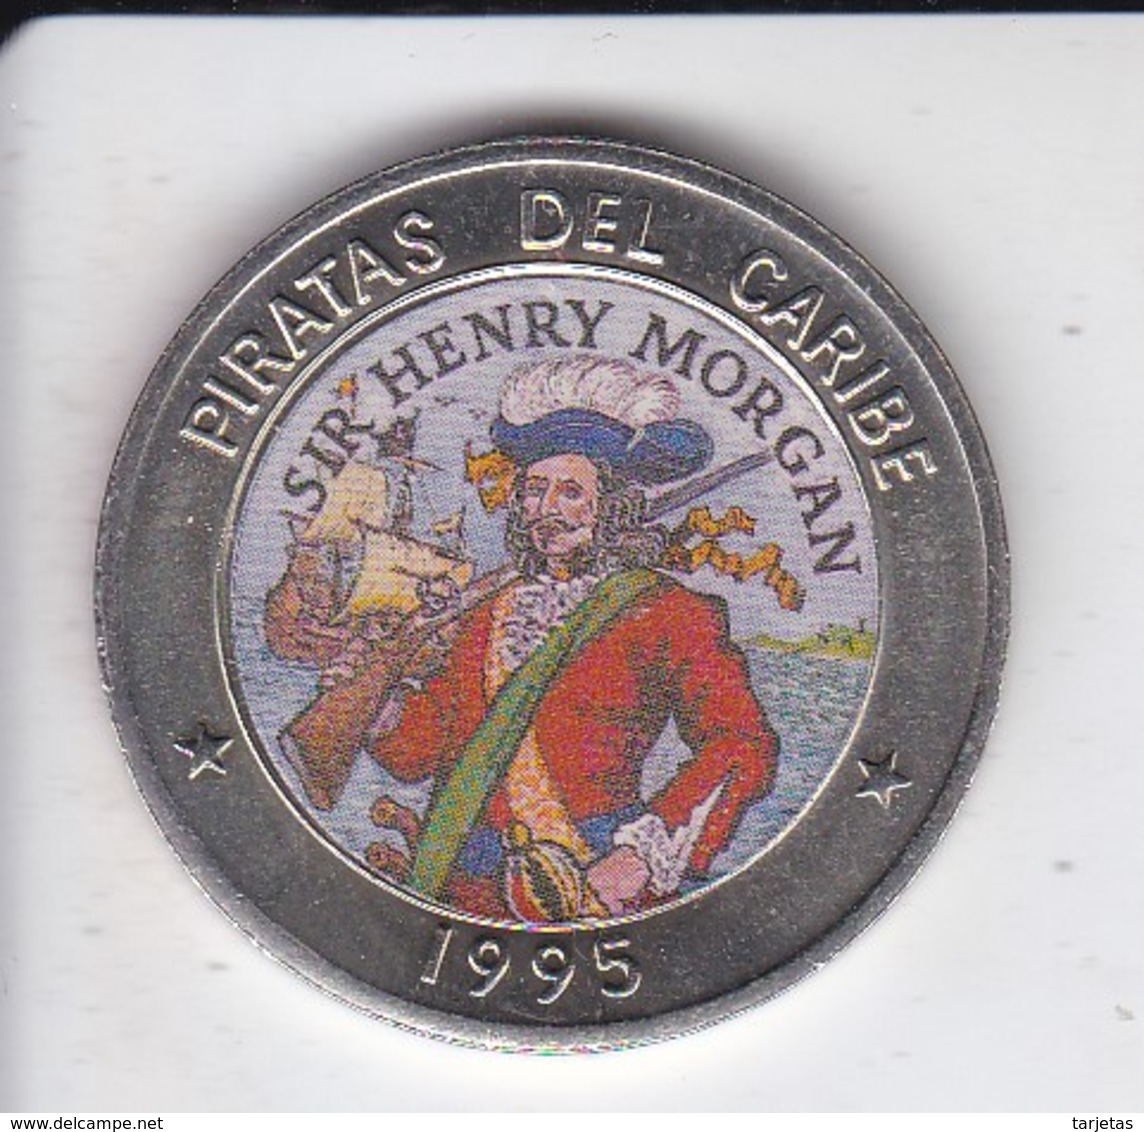 MONEDA DE CUBA DE 1 PESO DEL AÑO 1995 DE PIRATAS DEL CARIBE - SIR HENRY MORGAN - Cuba